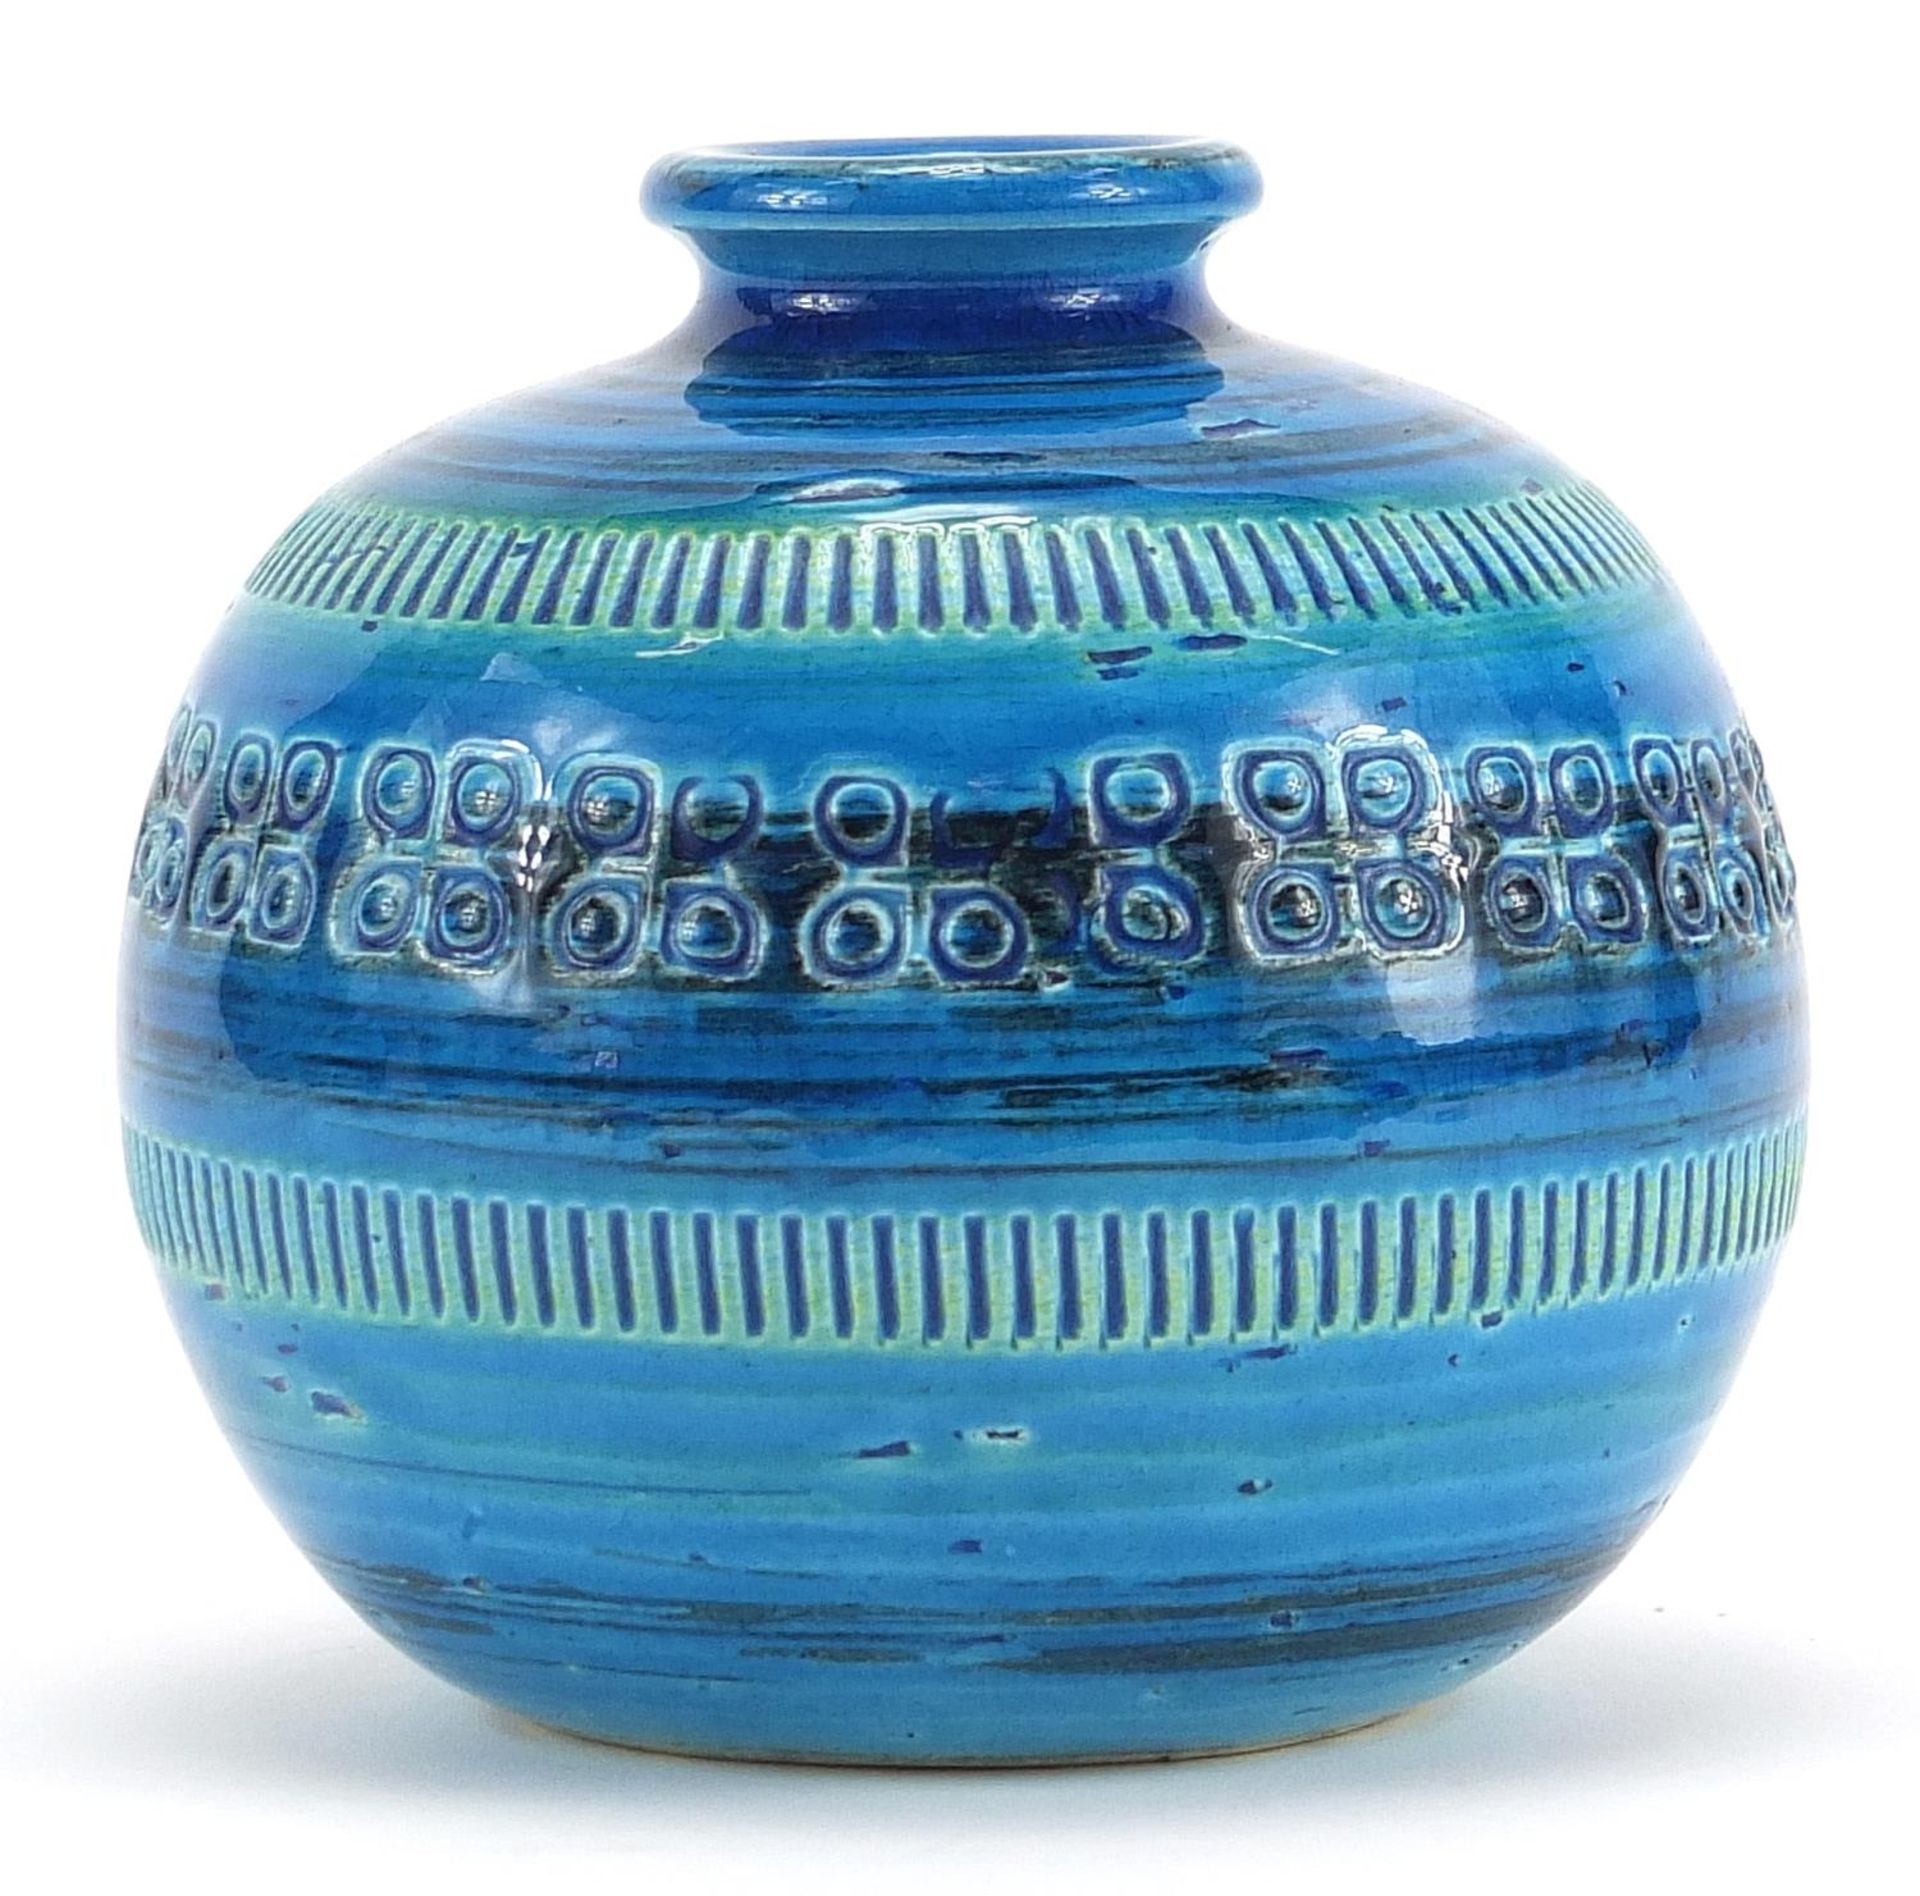 Bitossi, 1970s Italian globular vase, impressed marks to the base, 9.5cm high